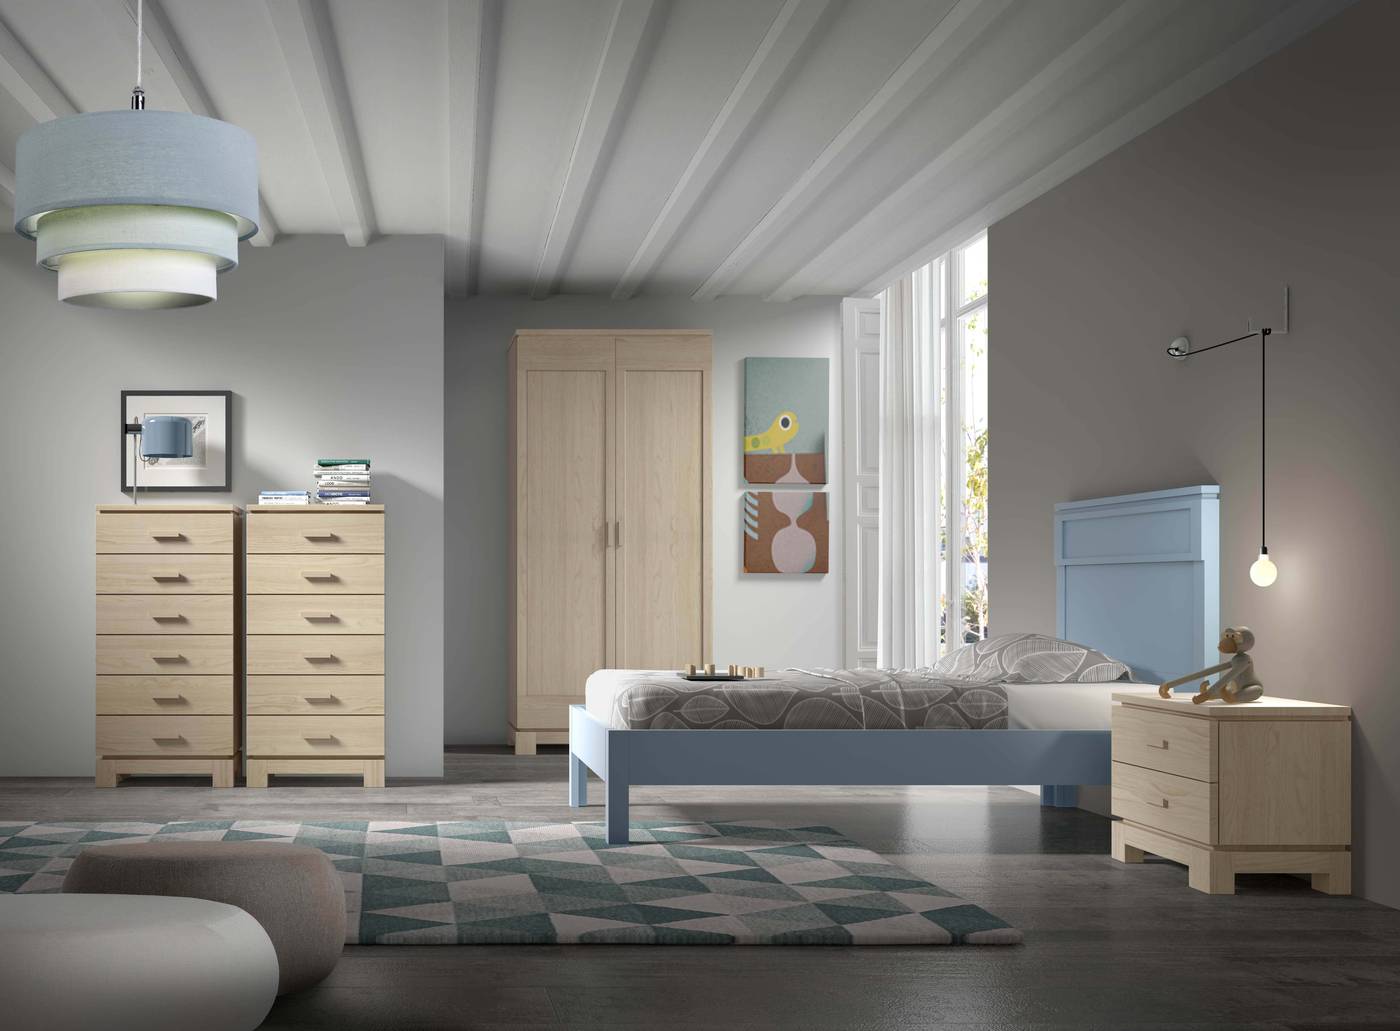 Sifonier Vega 6 cajones - Sifonier de madera de 6 cajones para dormitorio juvenil o matrimonio. Disponible en una amplia gama de colores